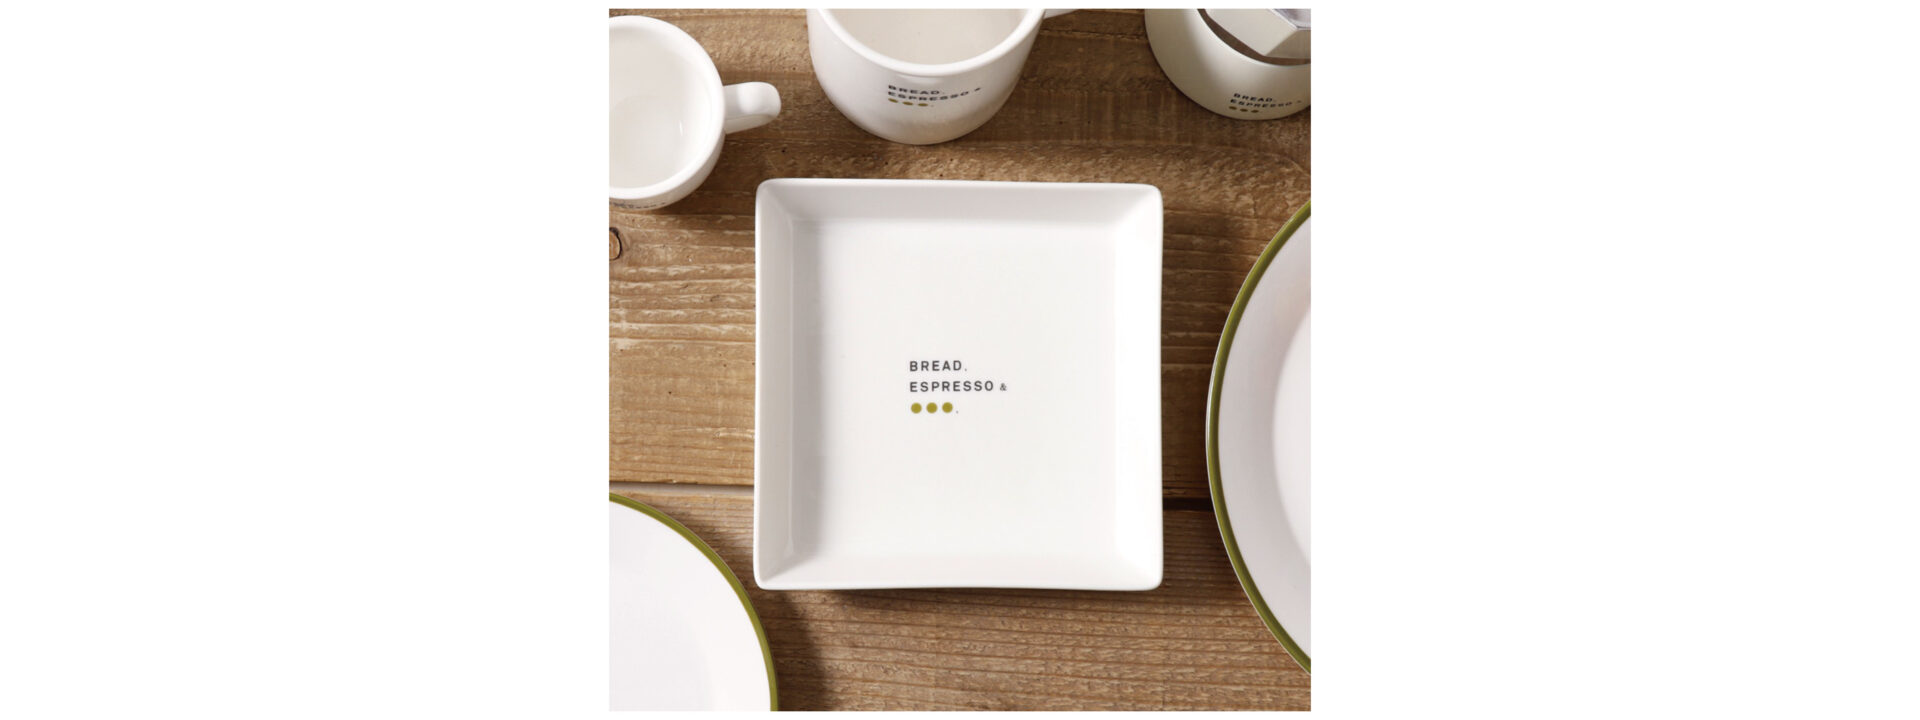 フレンチトーストプレートの写真。四角い白いお皿の中央にロゴがプリントされています